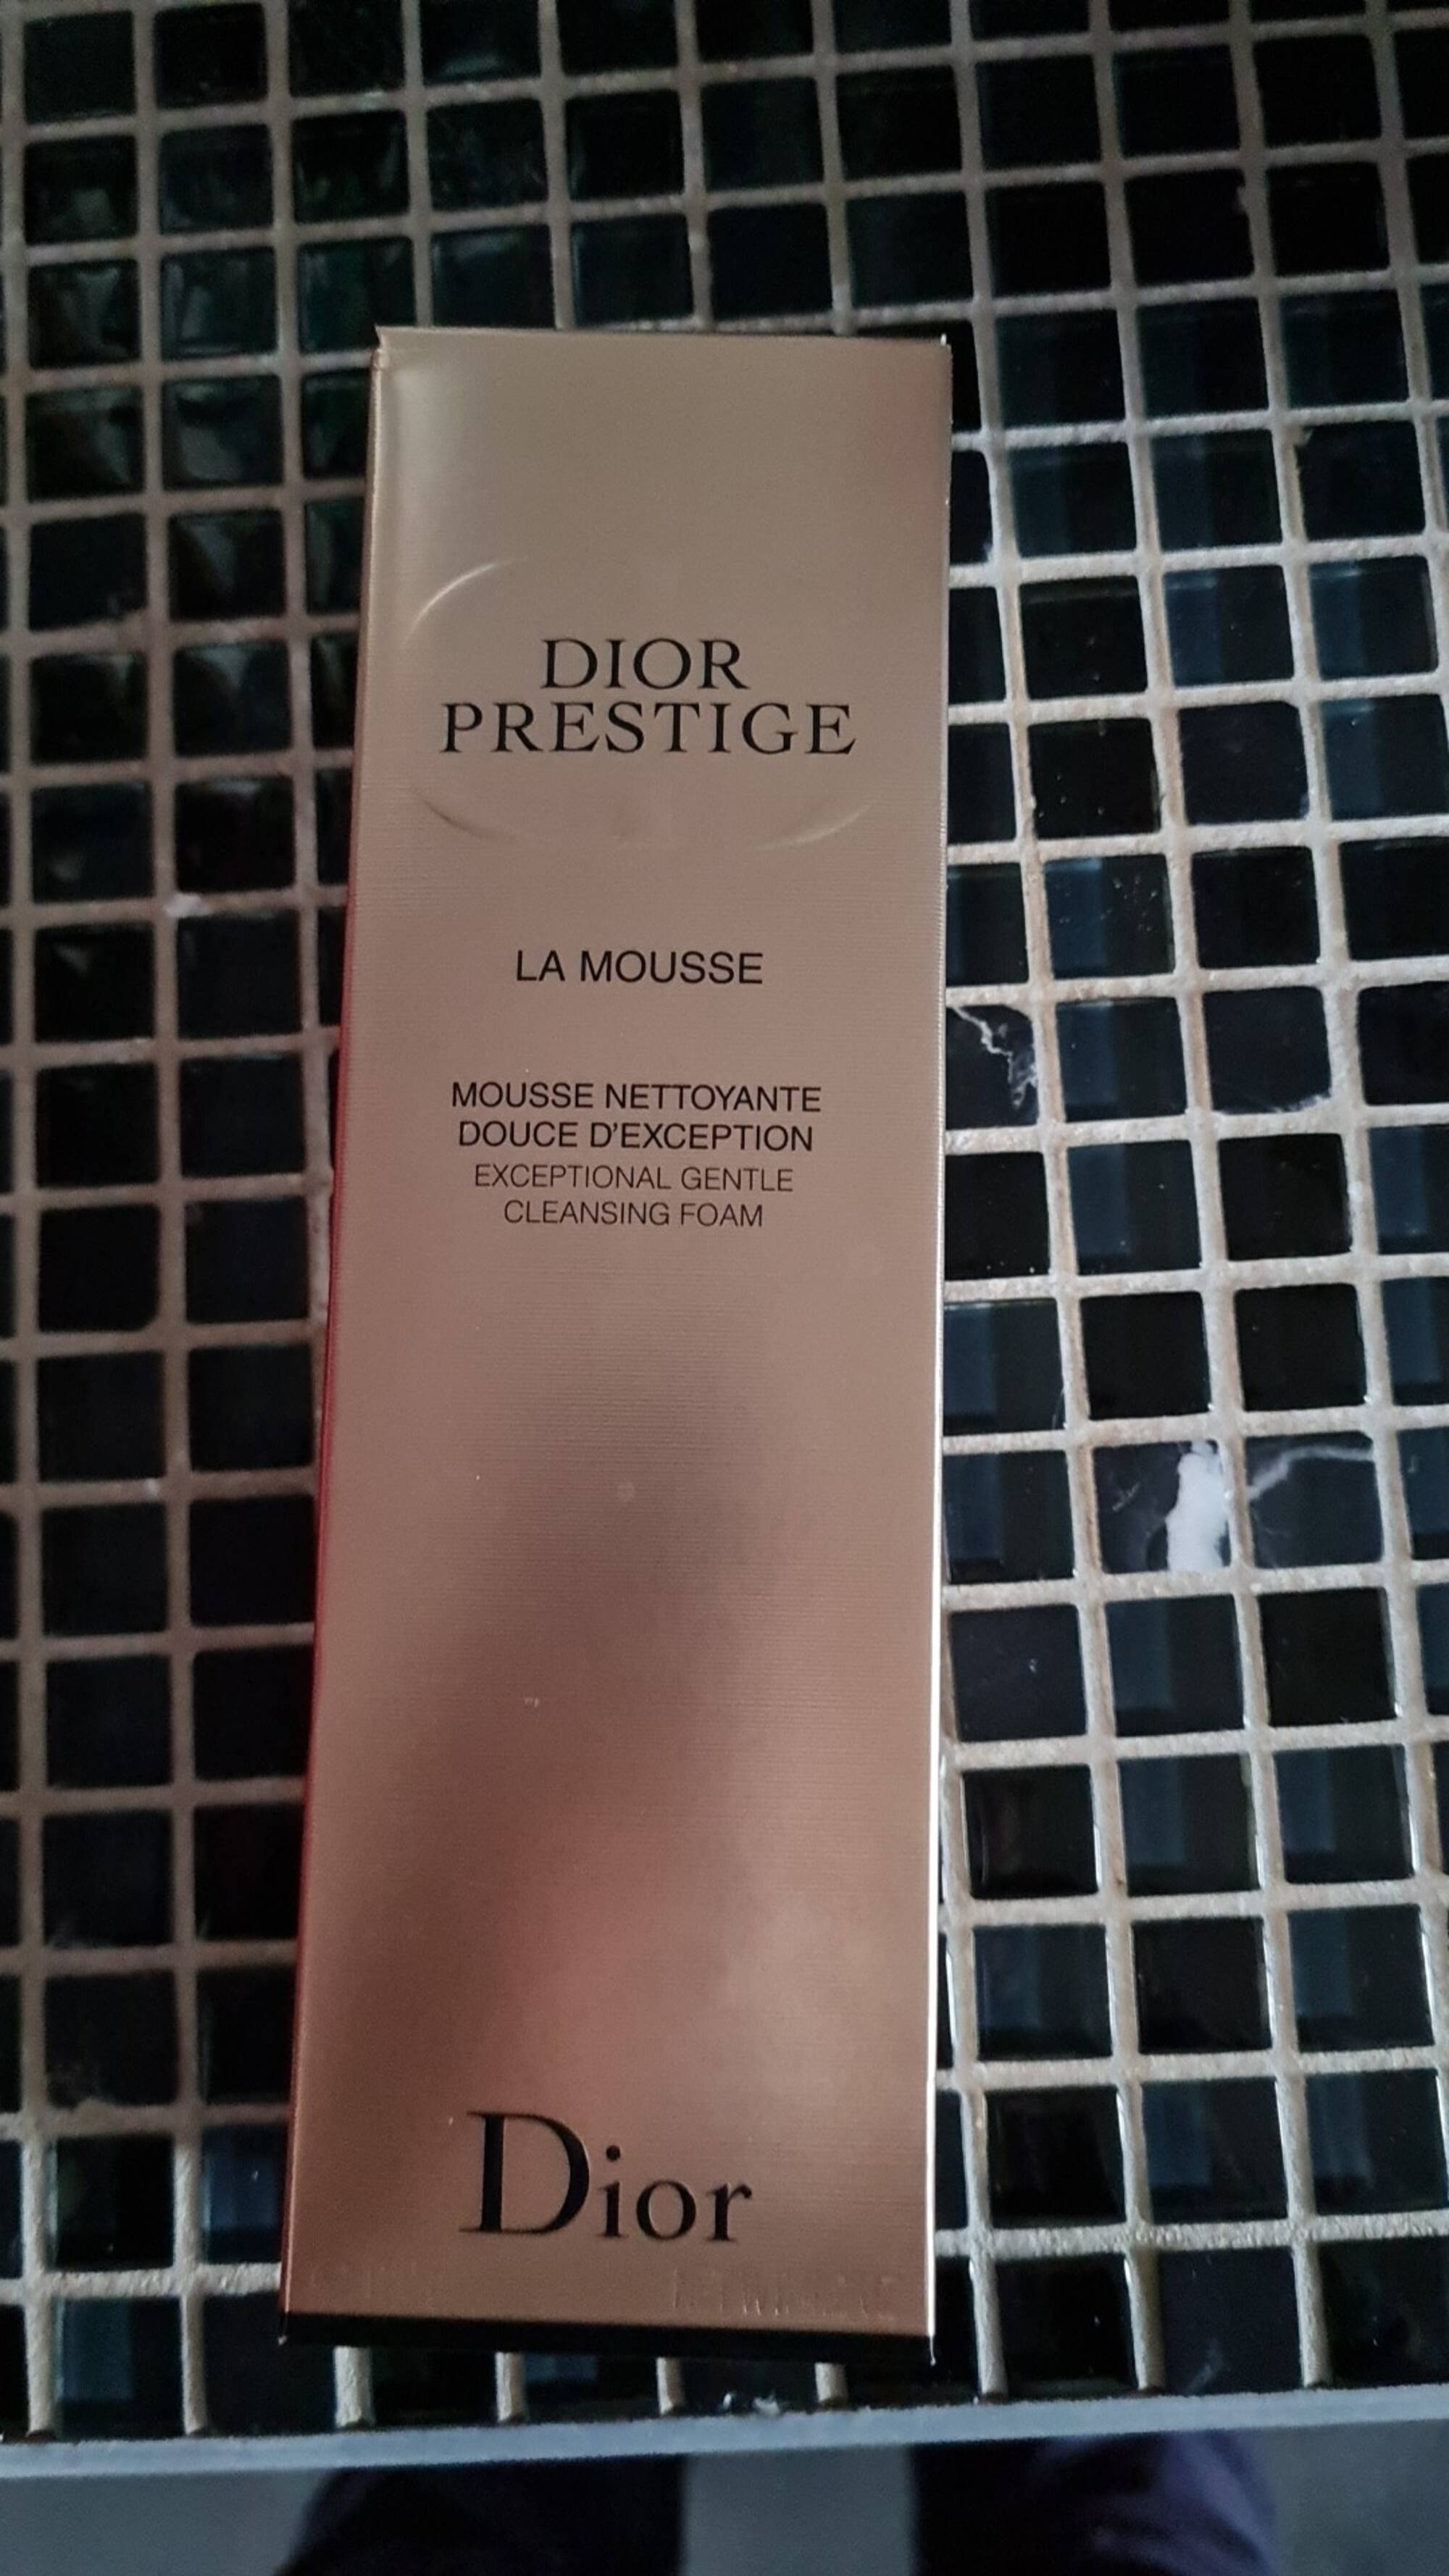 DIOR - Dior prestige - Mousse nettoyante douce d'exception